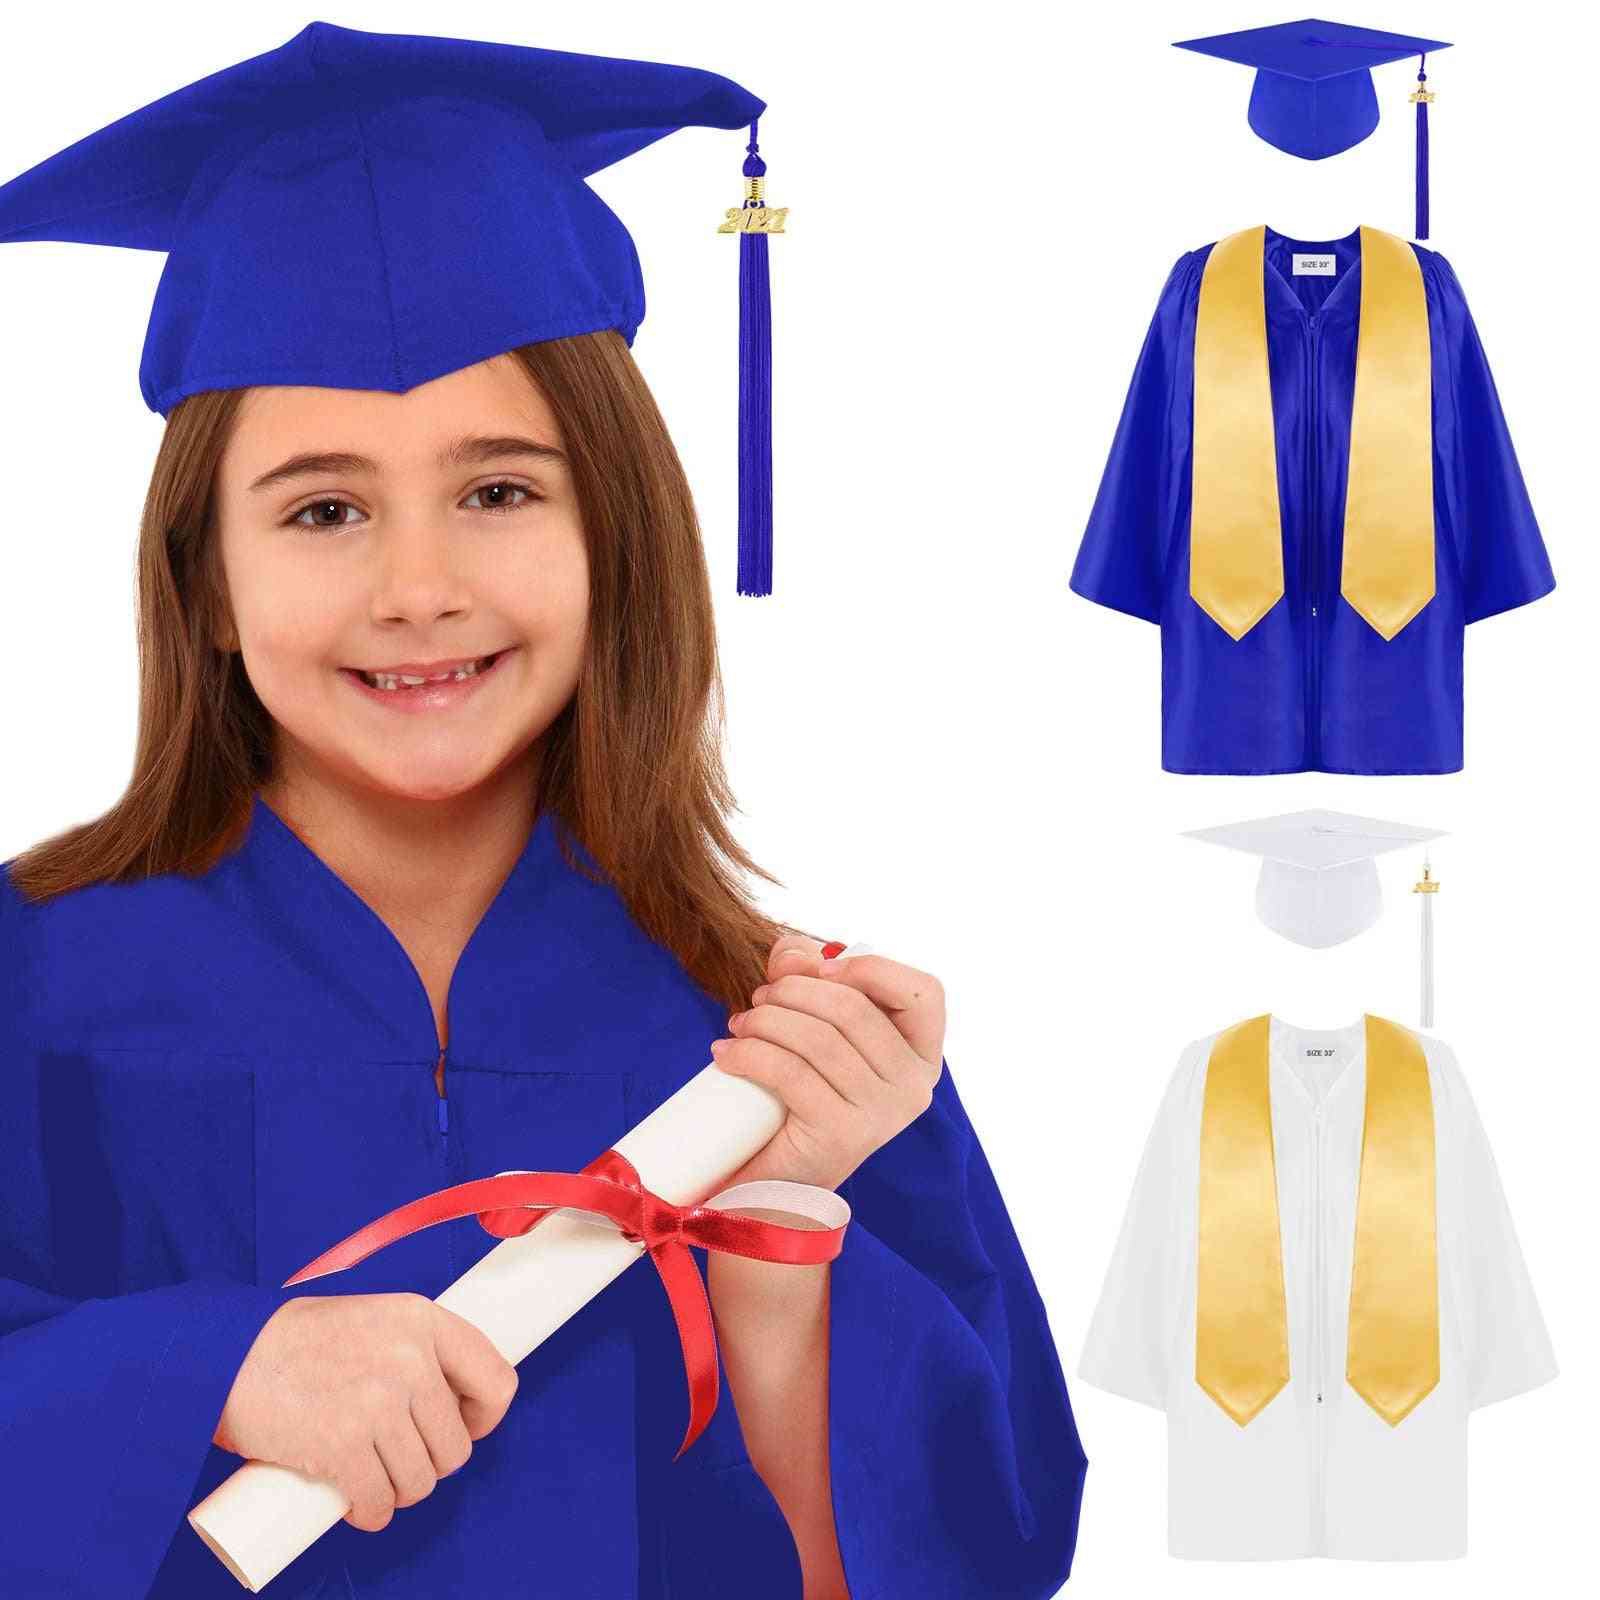 Children's Academic Dress School Uniforms For